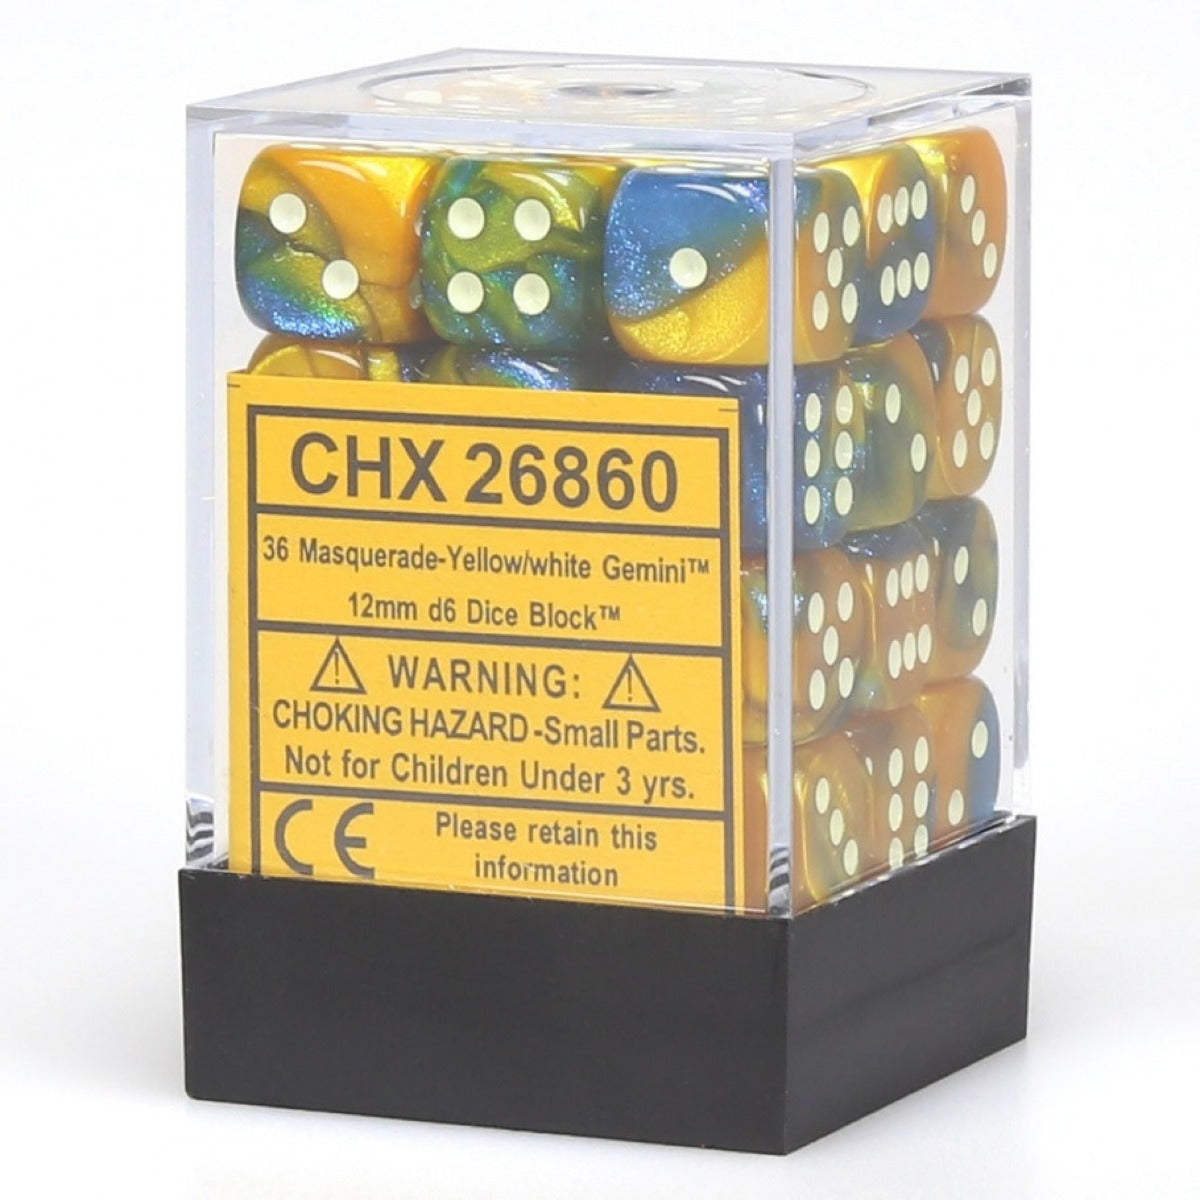 CHX 26860 Gemini 12mm d6 Masquerade Yellow/White Block (36)